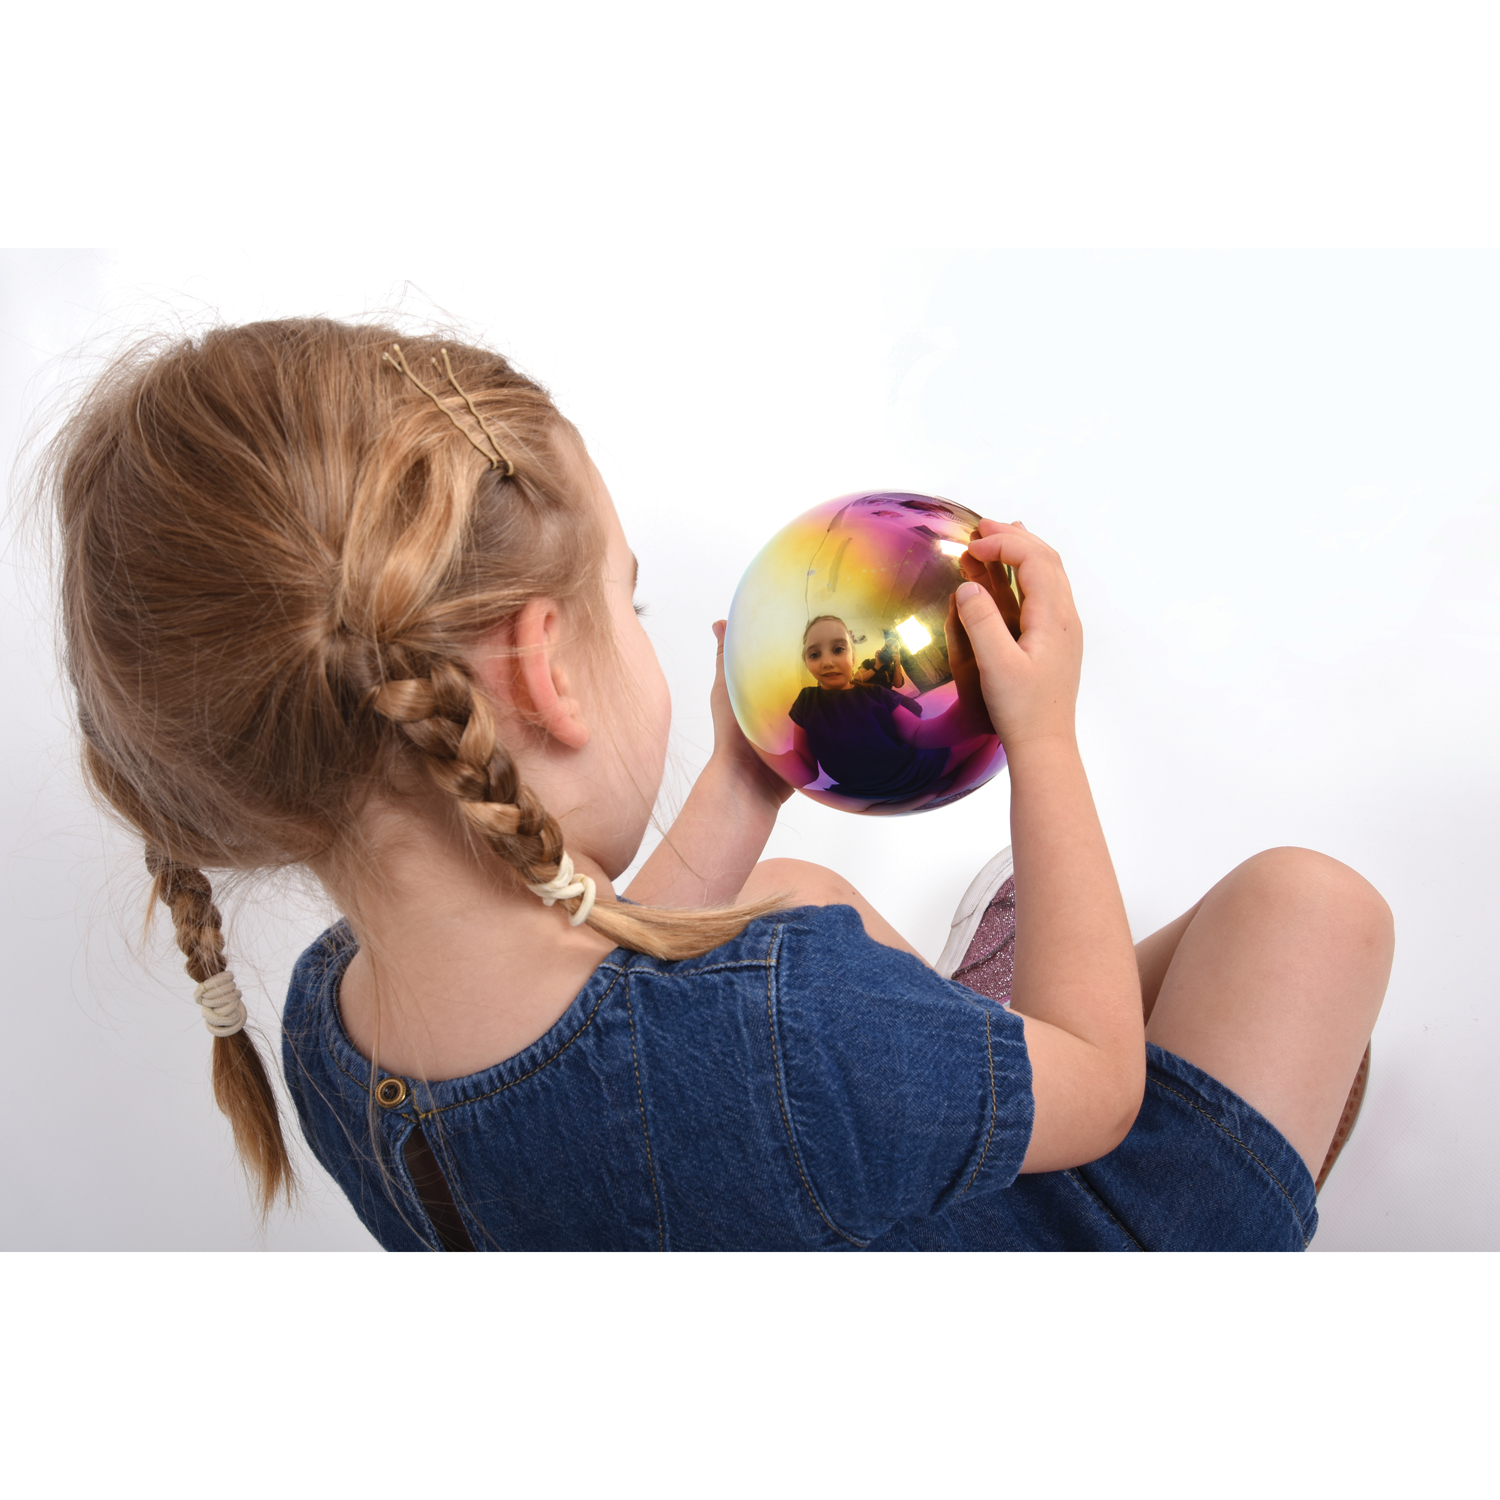 TickiT Sensory Reflective Balls - Color Burst - Set of 4 image number null